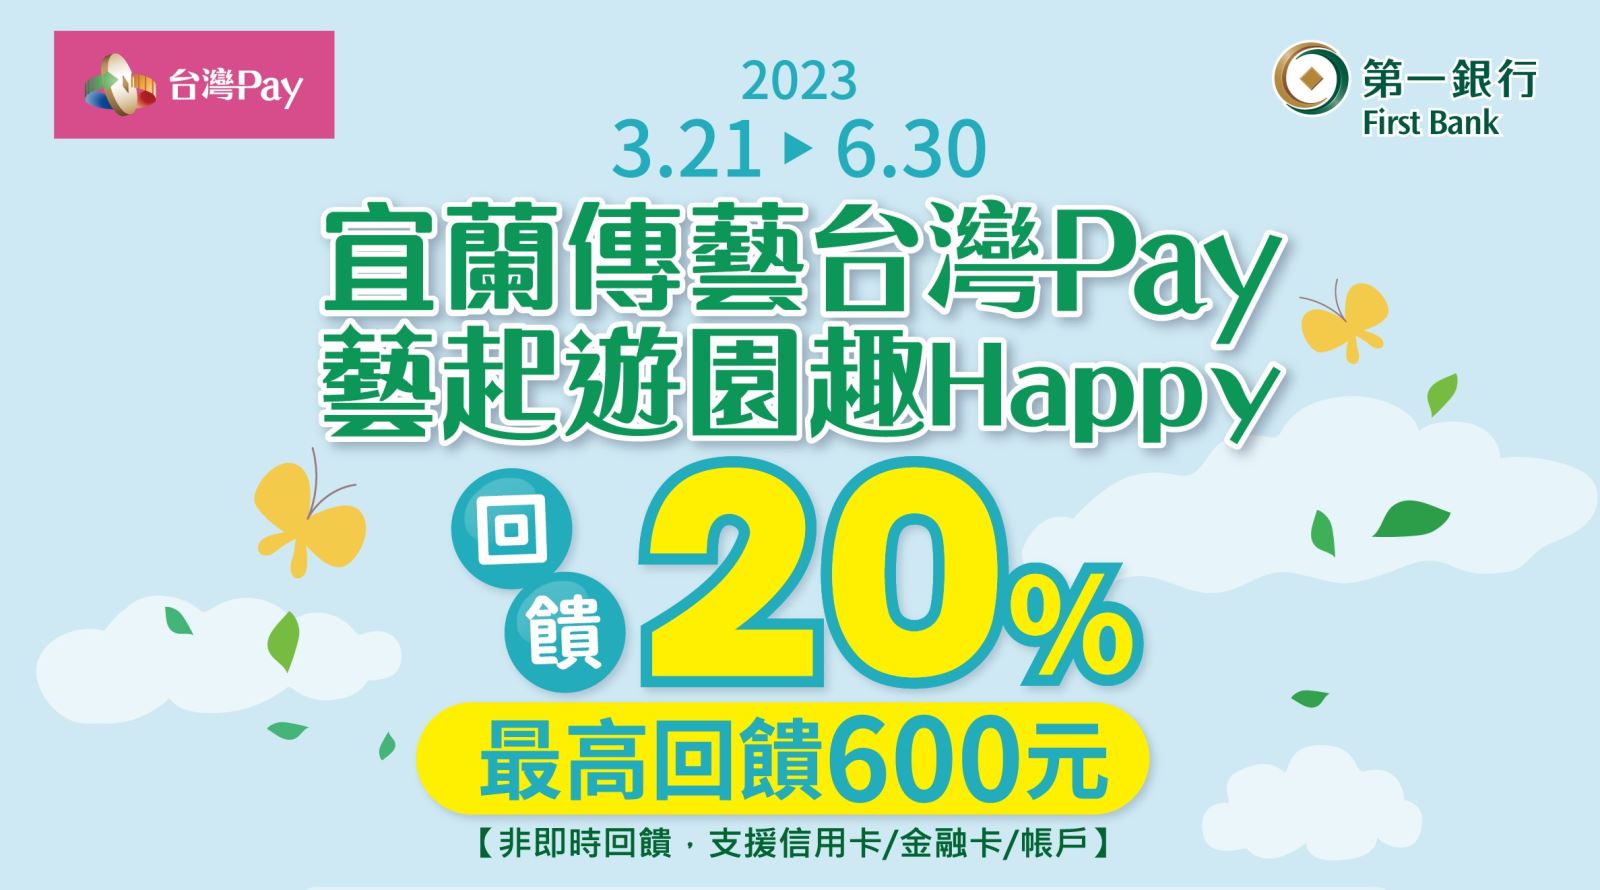 用戶於活動期間至活動地點消費，並出示「台灣 Pay」付款條碼進行支付，單筆消費不限金額 20%回饋，活動期間每一金融卡/帳戶/信用卡最高回饋新臺幣600 元為限。